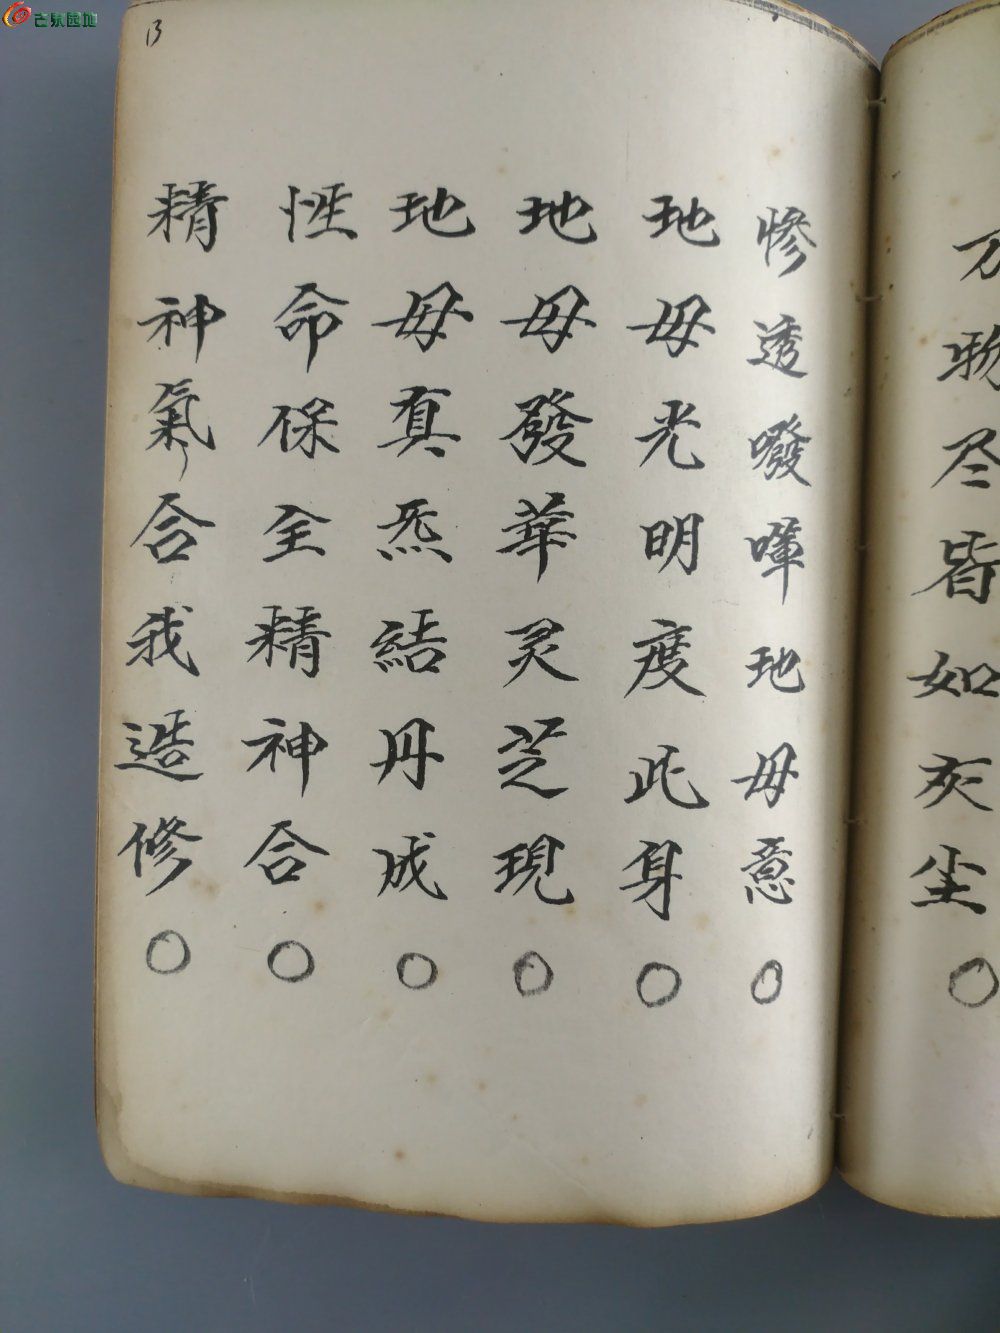 辛未年或壬申年手抄本 《地母妙经上下卷》署名毛回西藏 大字 漂亮